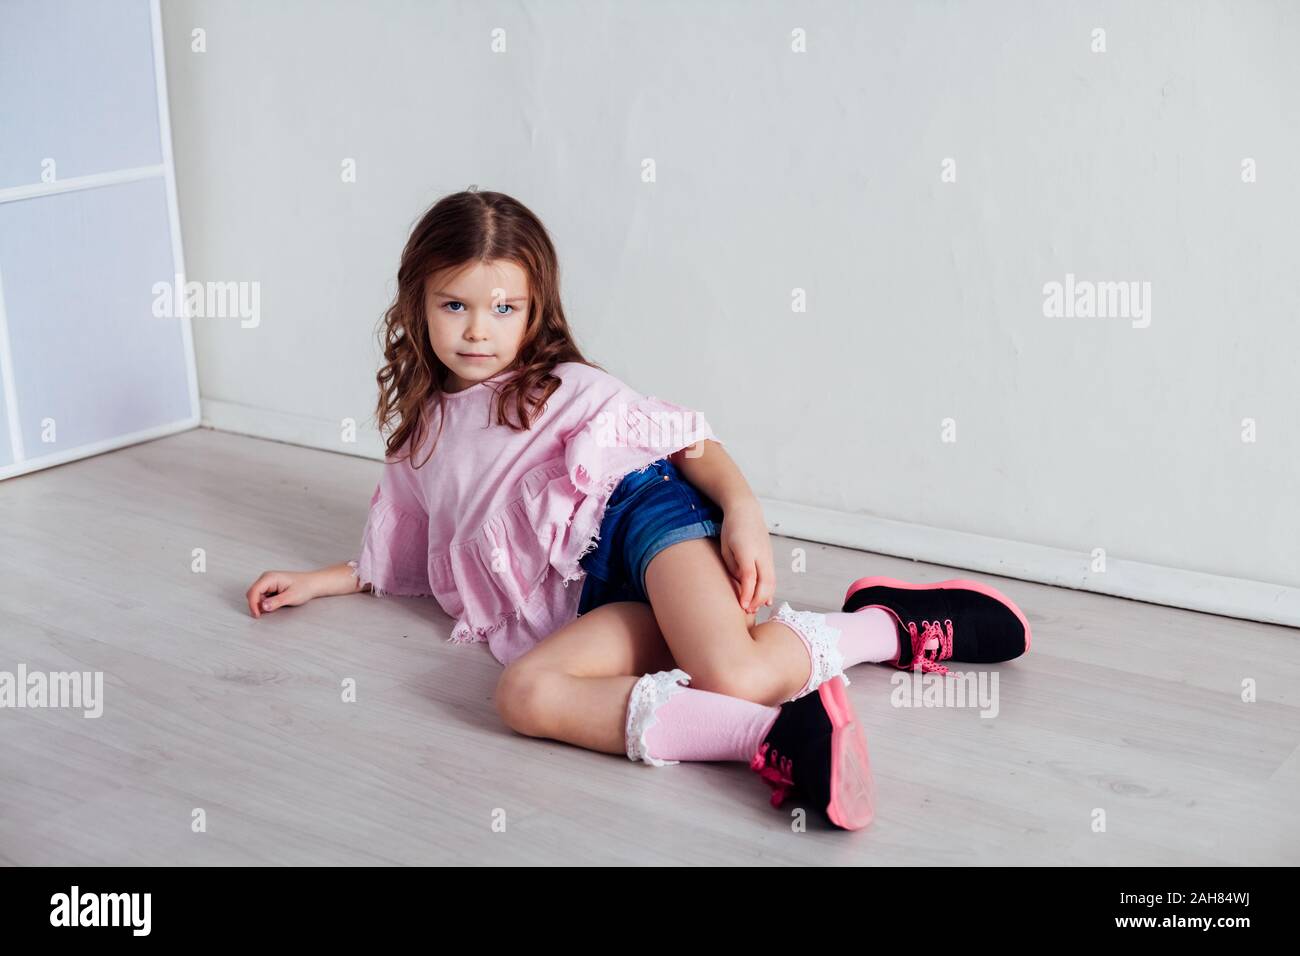 https://c8.alamy.com/comp/2AH84WJ/portrait-of-a-beautiful-little-girl-in-a-pink-dress-five-years-2AH84WJ.jpg